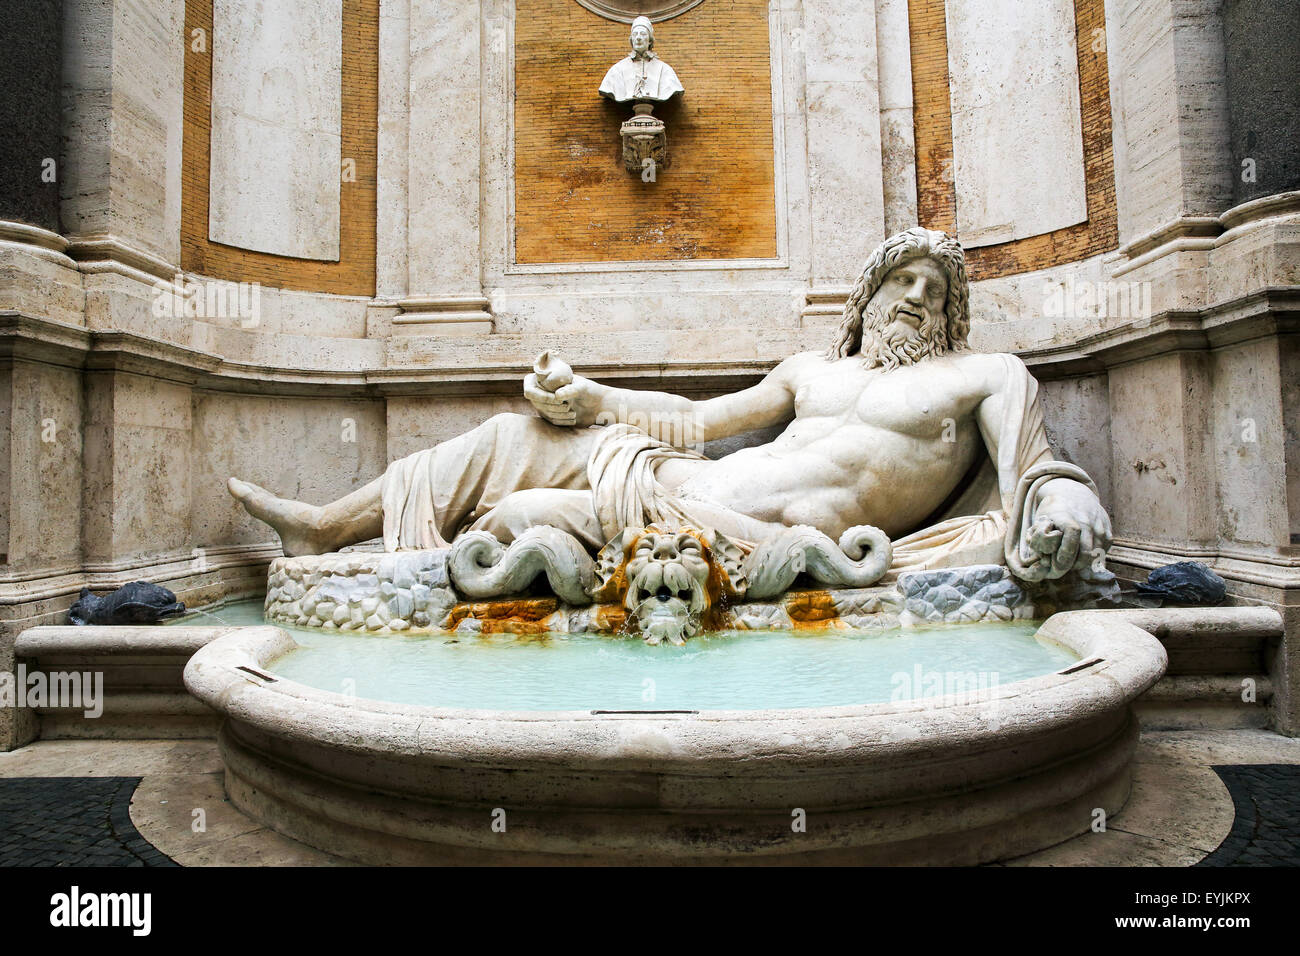 Marforio, une statue debout dans Palazzo Nuovo dans le musée du Capitole à Rome Italie Banque D'Images